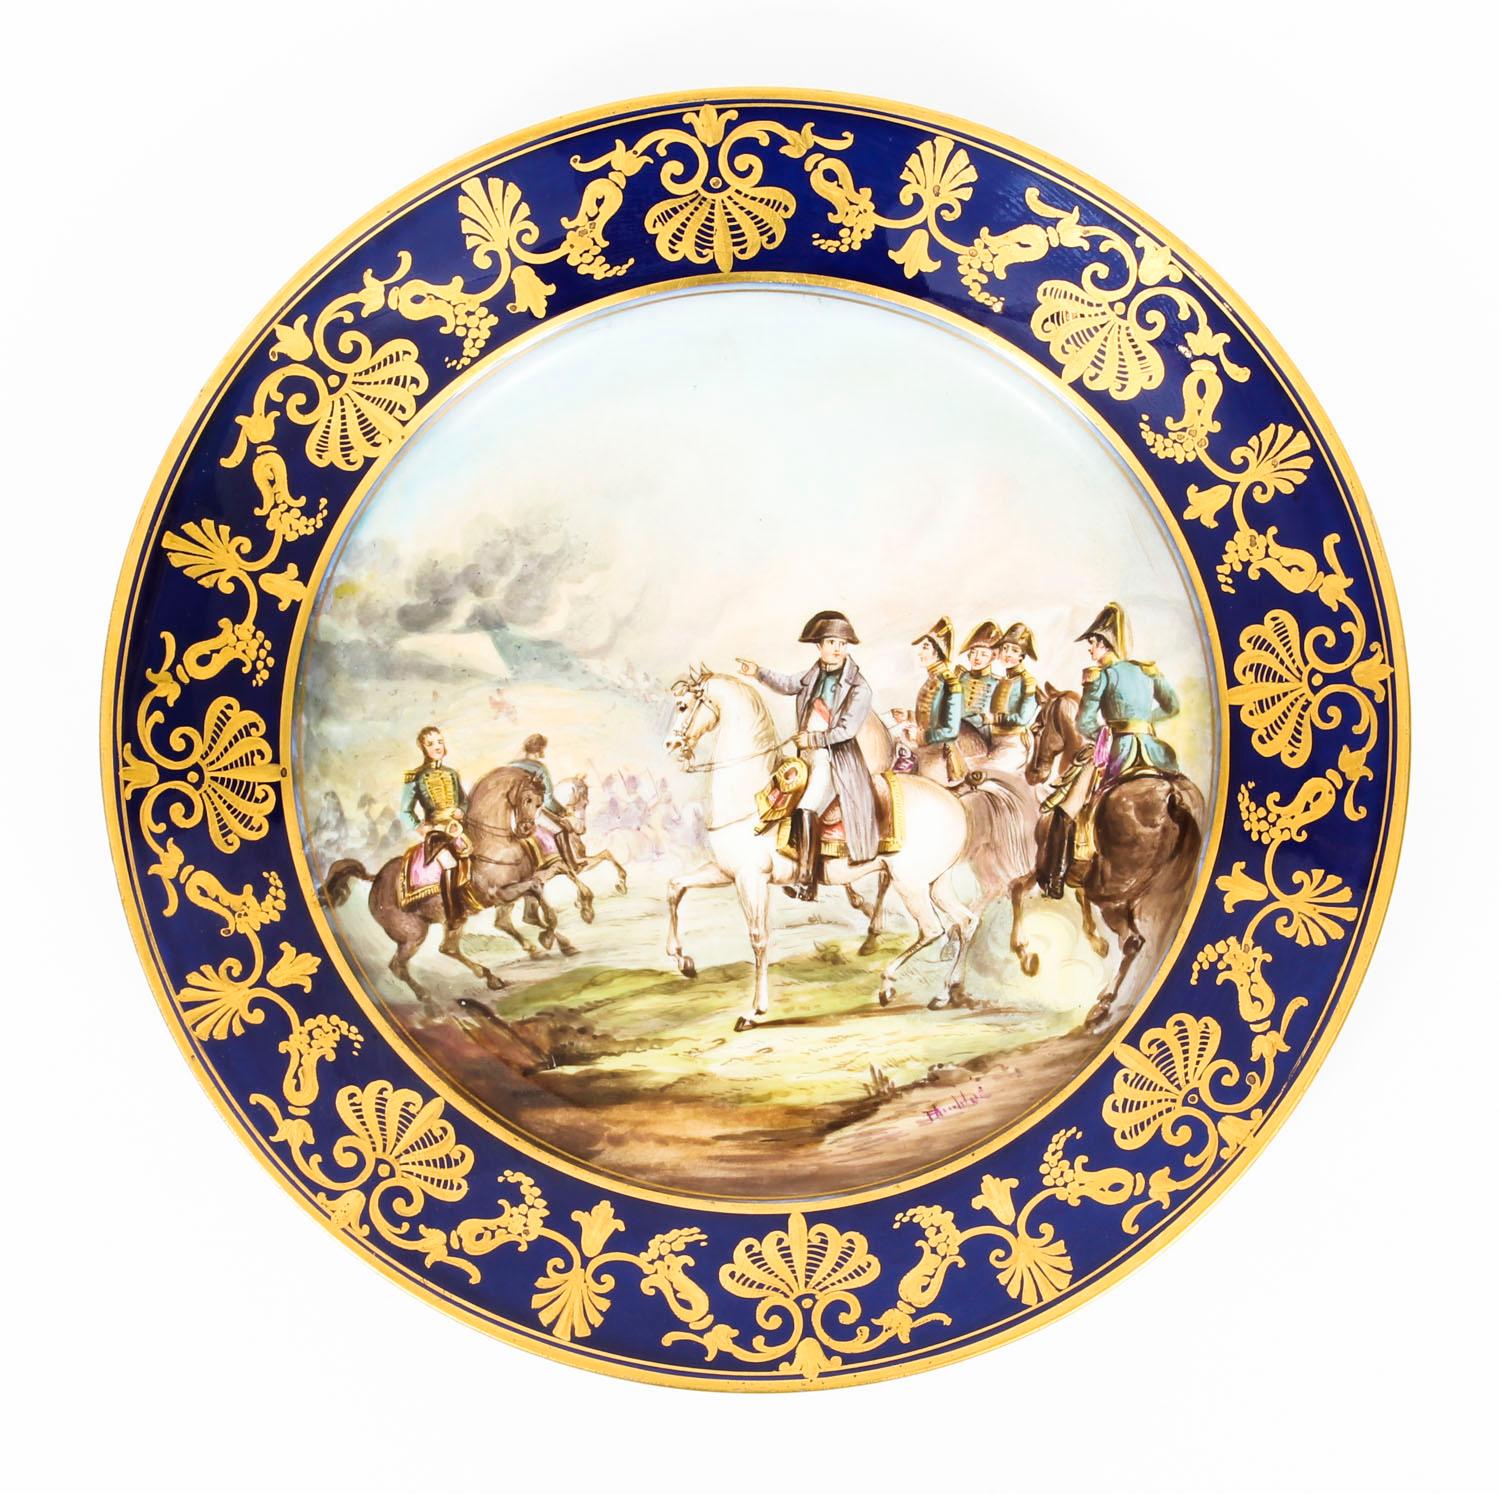 Il s'agit d'une ravissante paire d'assiettes de cabinet en porcelaine de Sèvres, datant de la fin du XIXe siècle.

Tous deux sont magnifiquement peints avec des scènes de la vie de Napoléon sur le champ de bataille, avec des bordures bleu roi et